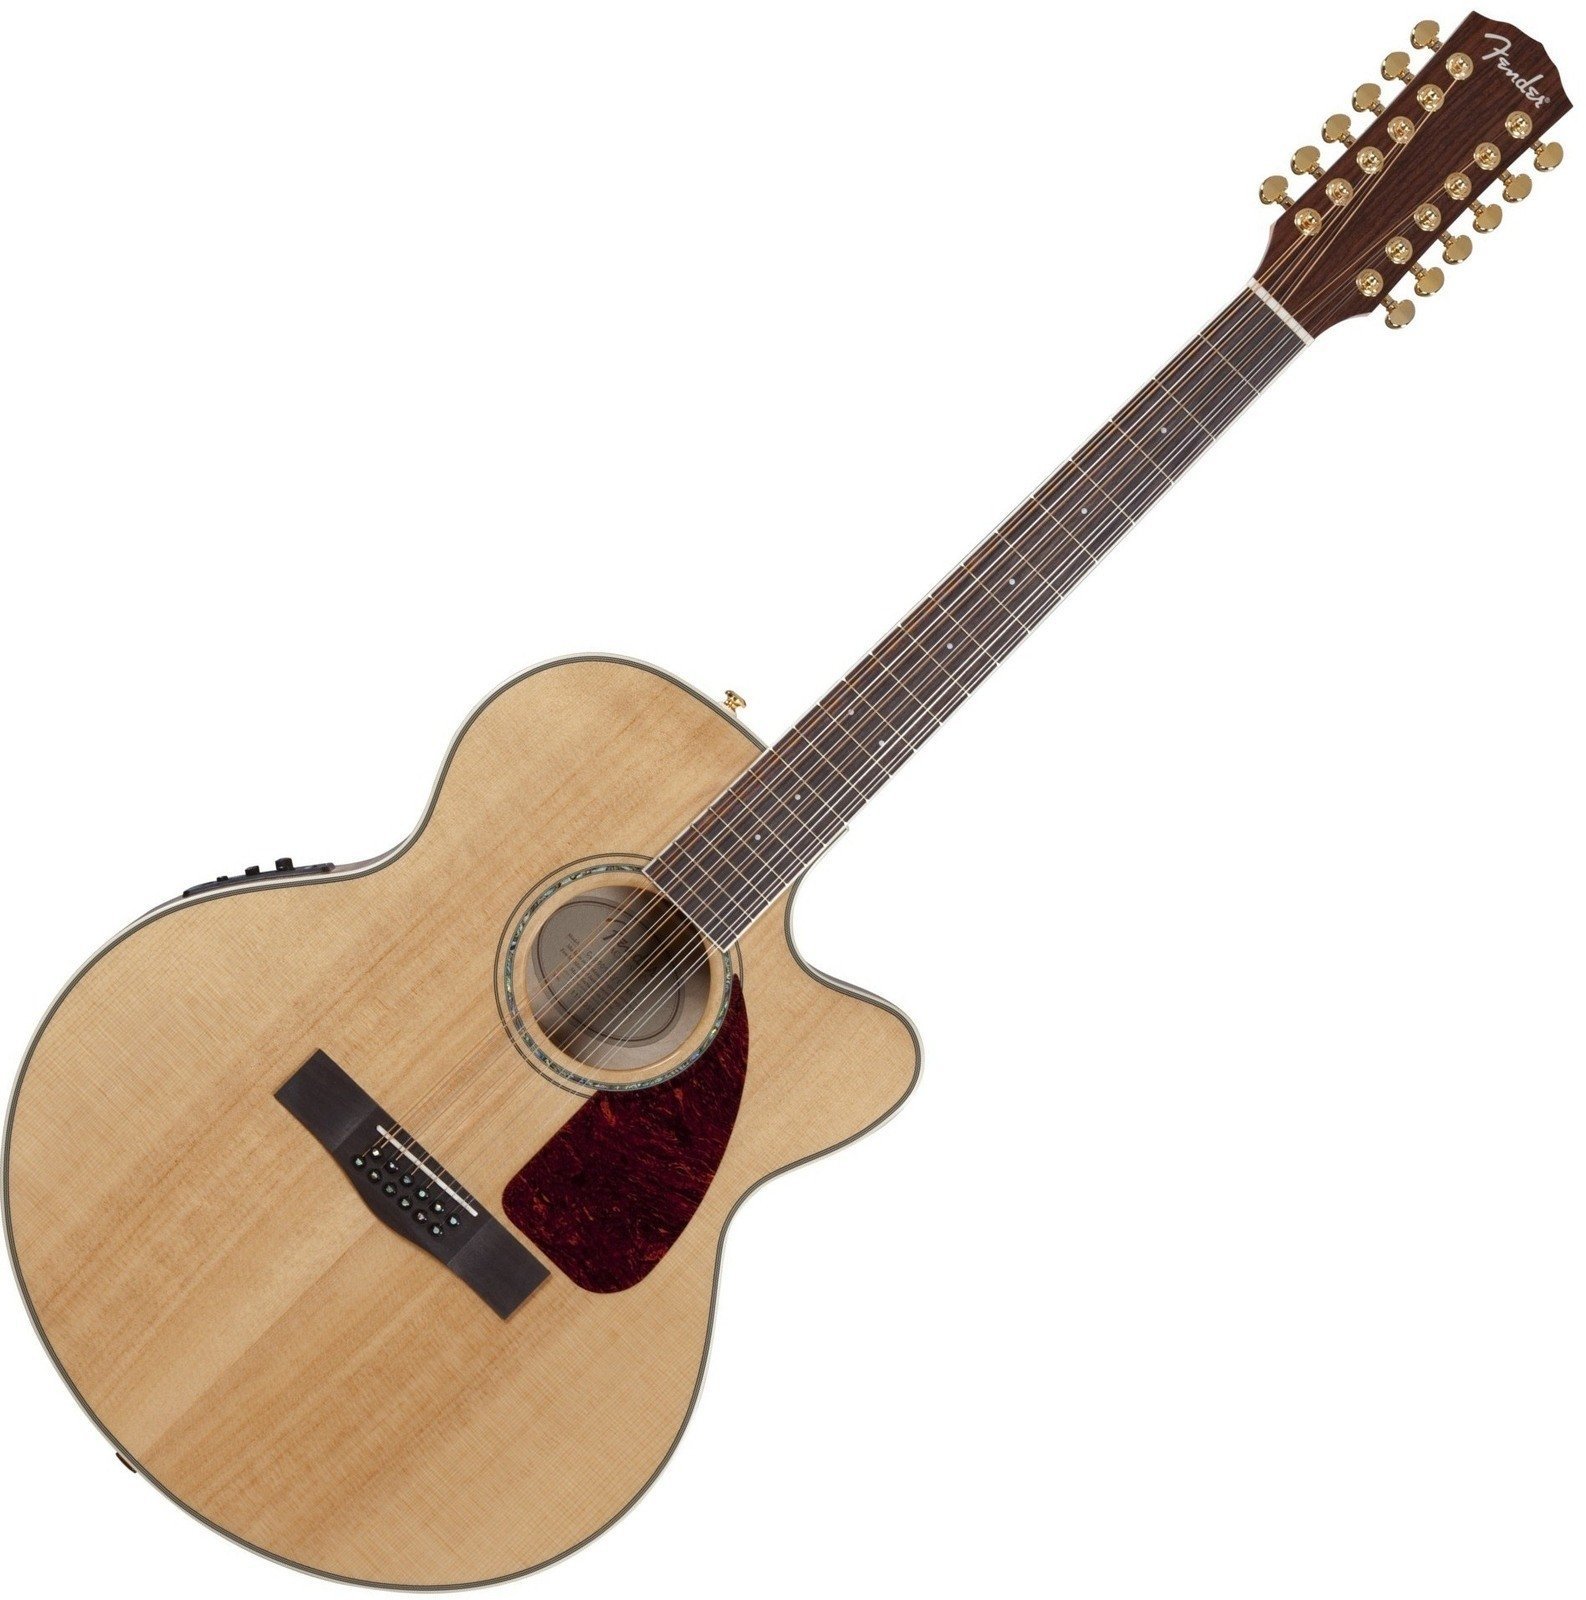 12χορδη Ηλεκτροακουστική Κιθάρα Fender CJ290 SCE 12 Natural